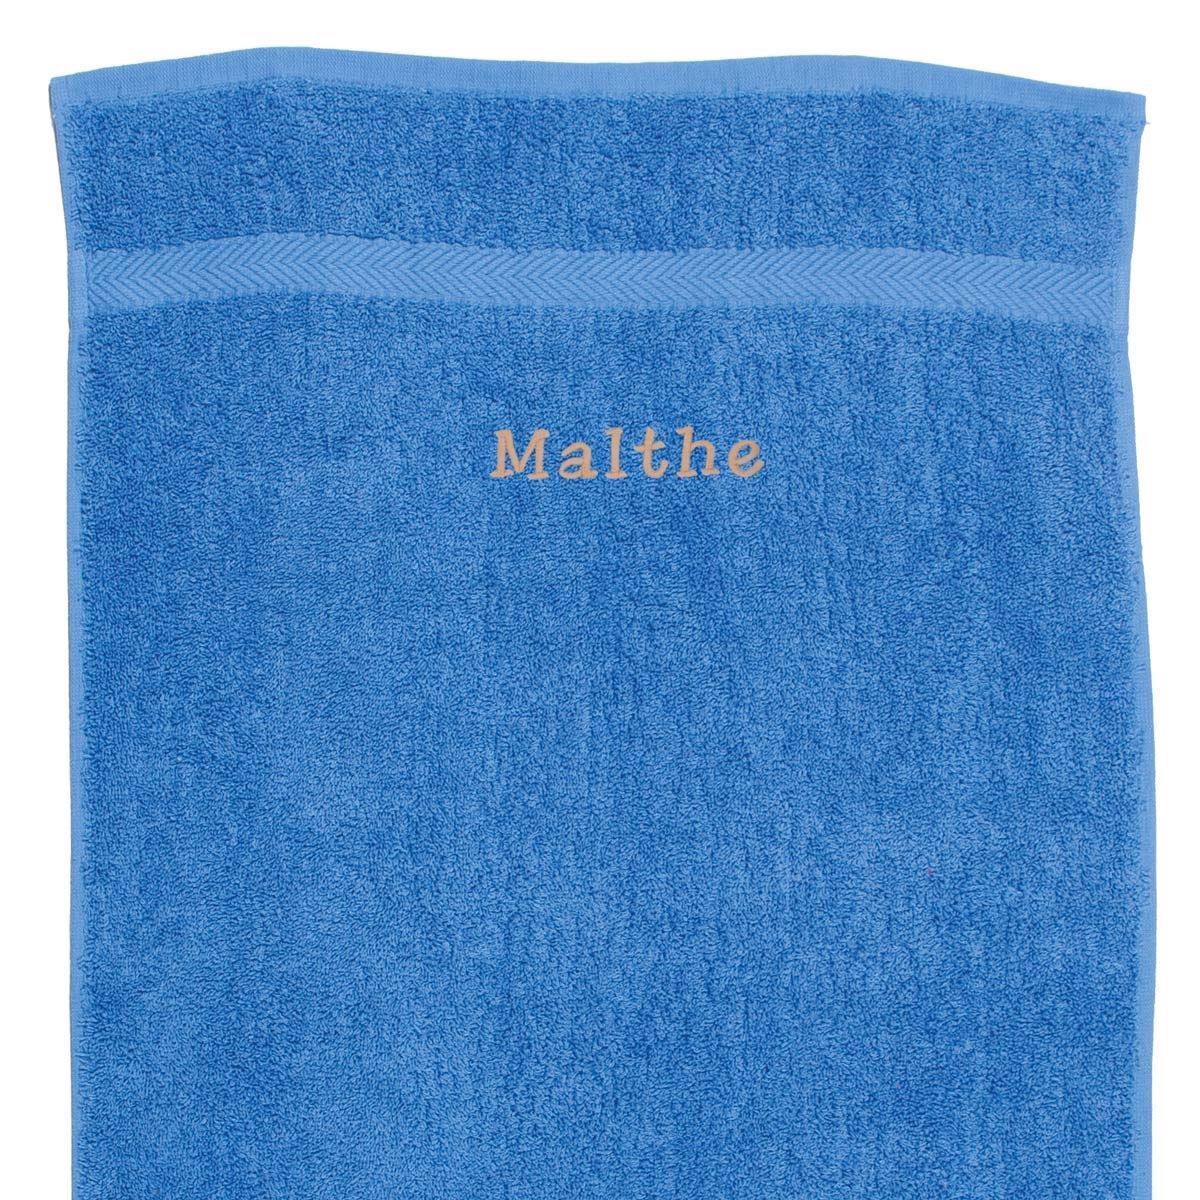 Håndklæde med navn - havblå 50 x 90 cm